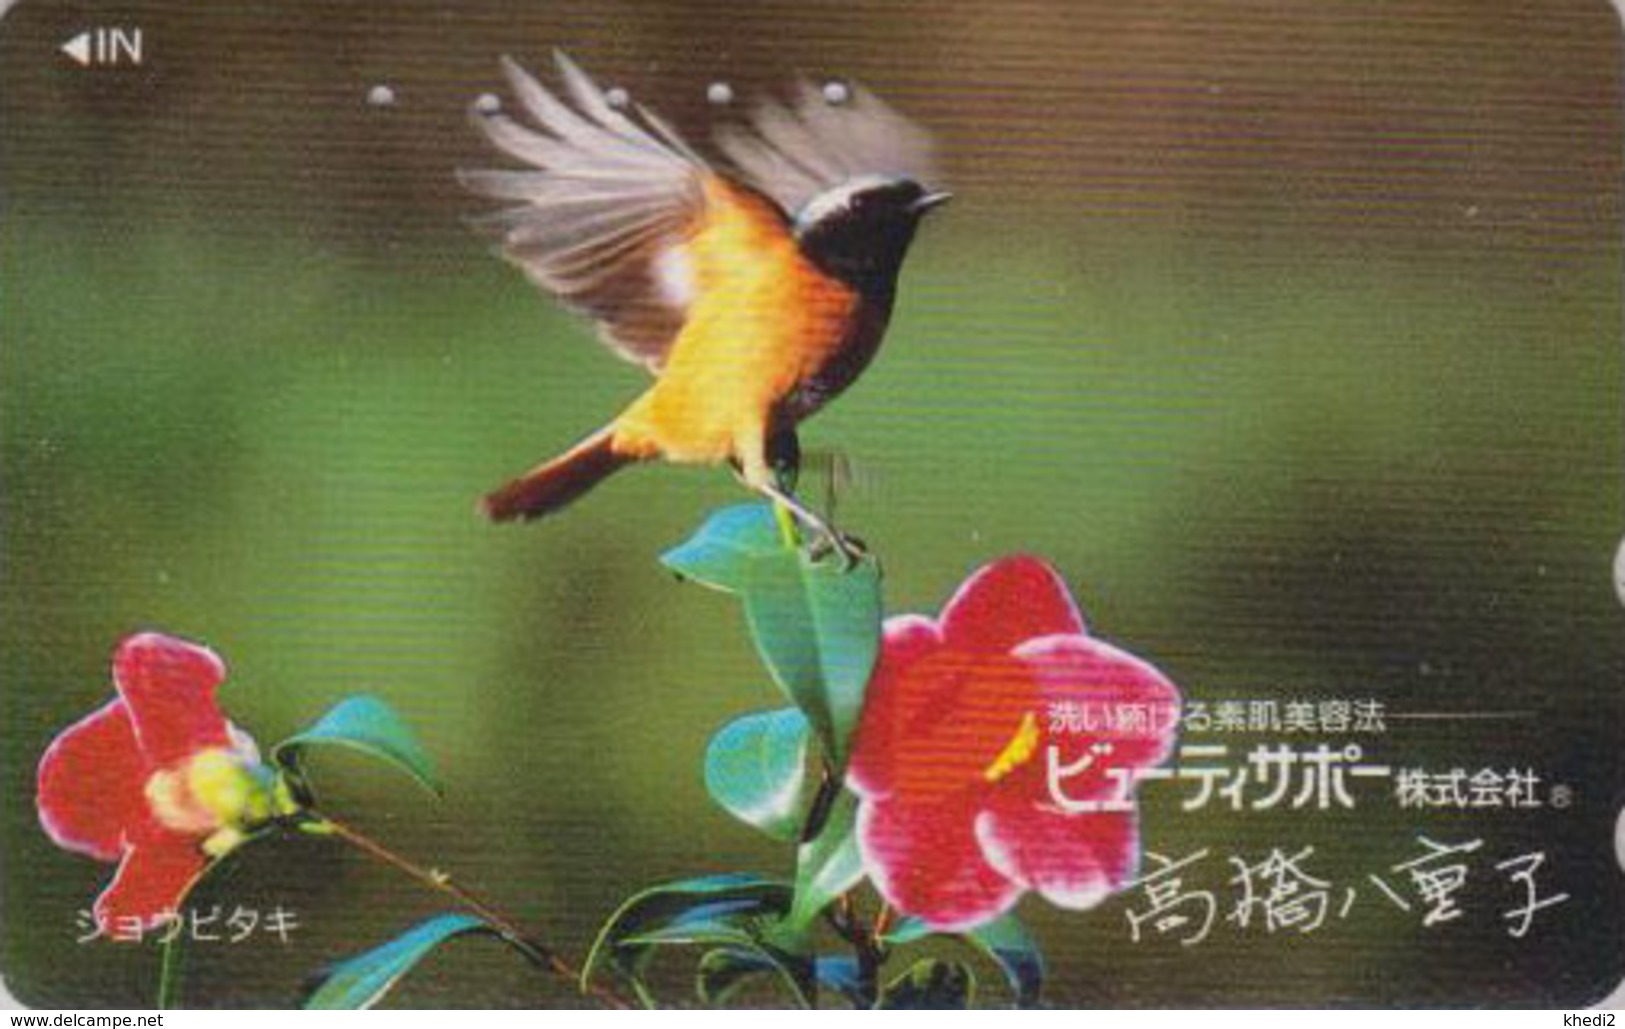 Télécarte Japon / 110-011 - Animal - OISEAU - ROUGEQUEUE AURORE - SONG BIRD Japan Phonecard - 4482 - Passereaux